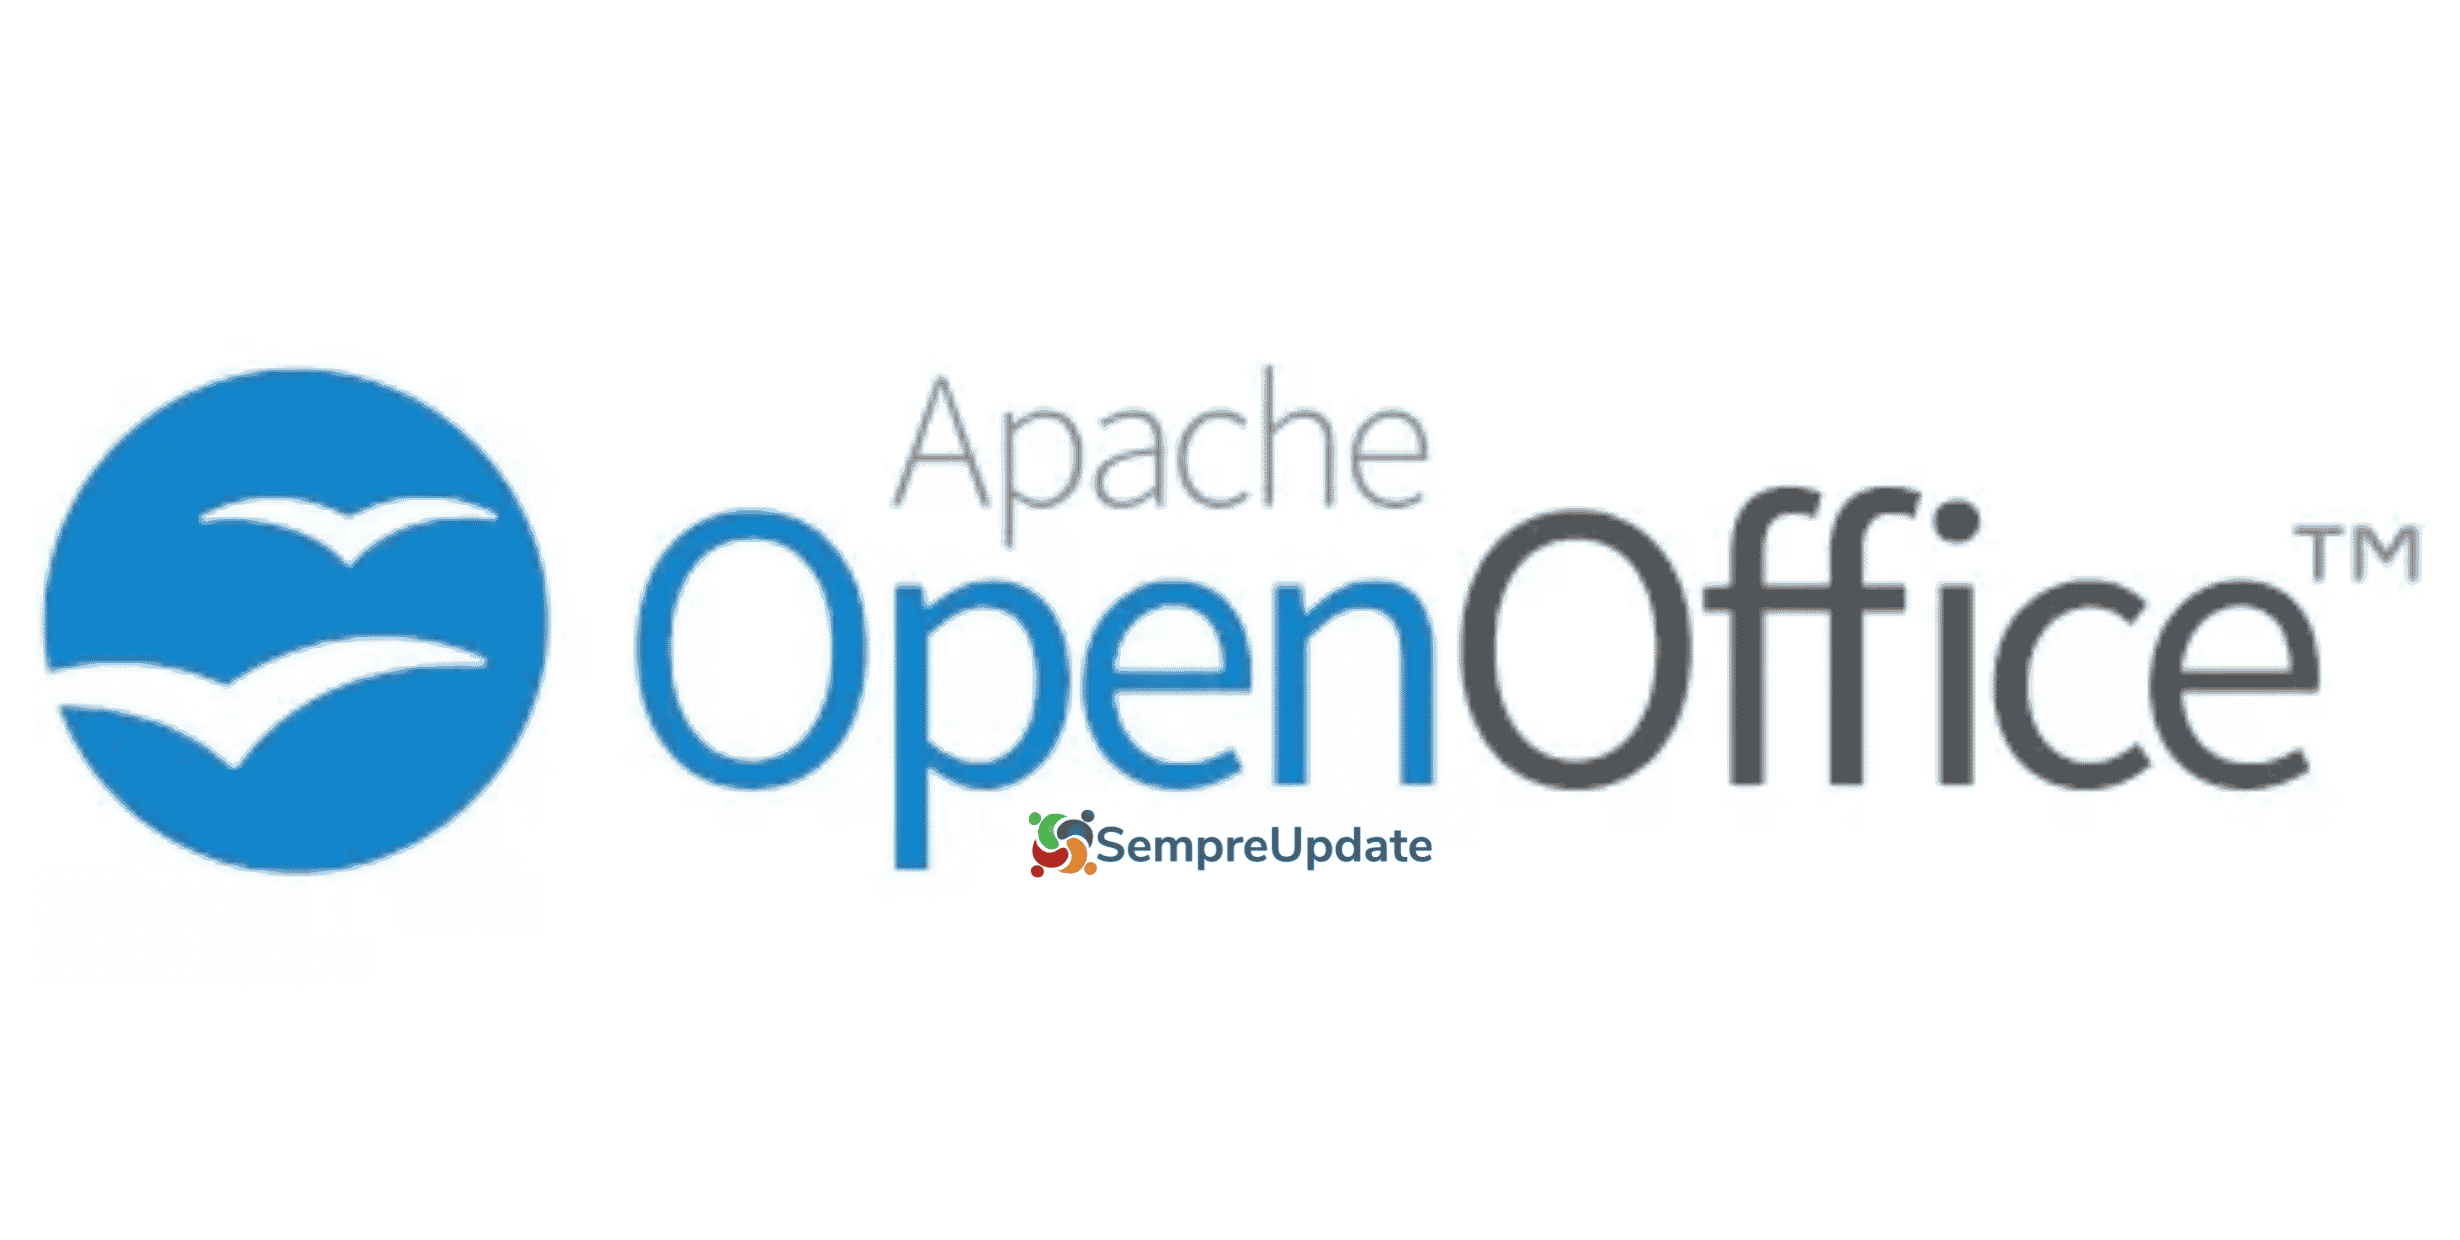 Apache anuncia mais de 333 milhões de downloads do OpenOffice